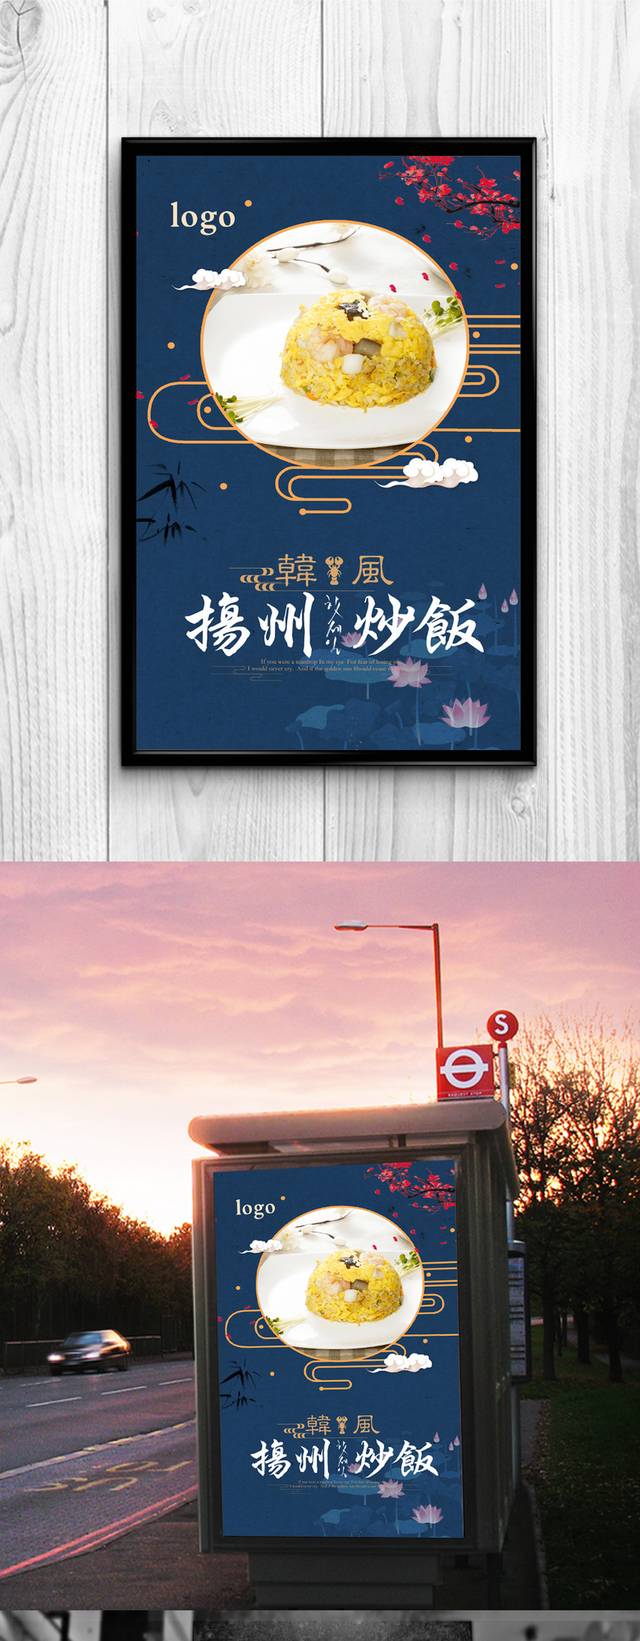 中国风复古扬州炒饭宣传海报设计